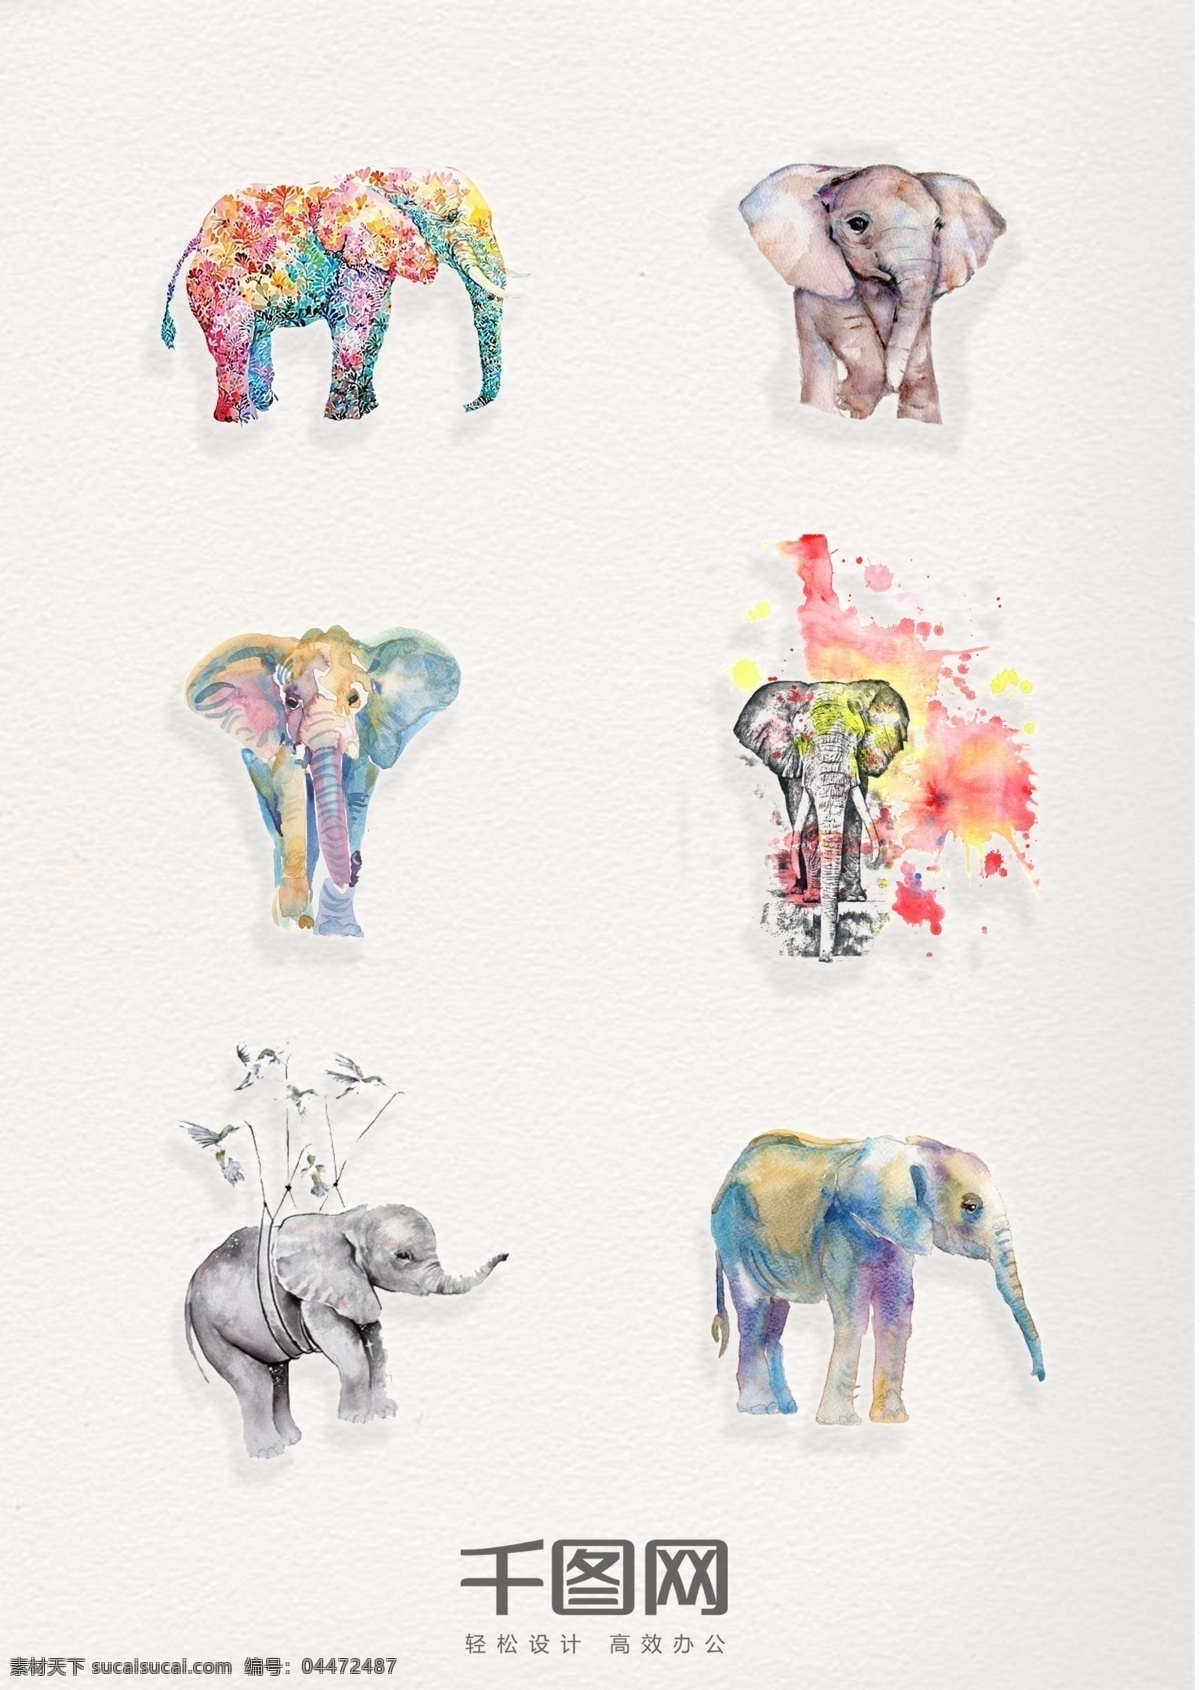 组 精美 水彩 动物 大象 设计素材 陆地 矢量动物 手绘 装饰 插画 psd素材 水粉